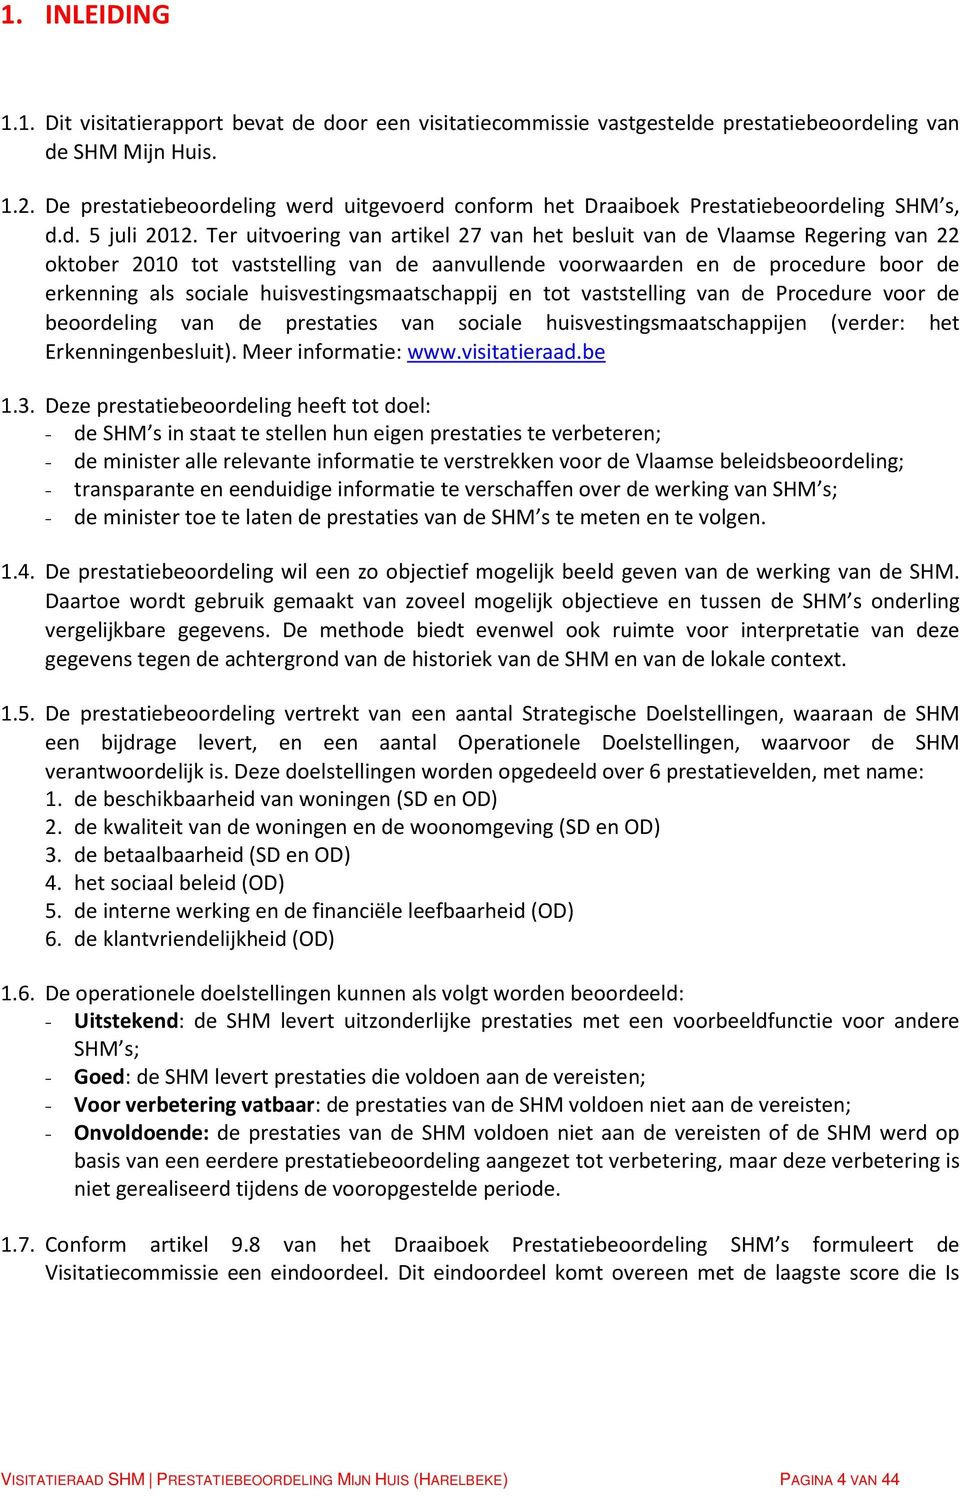 Ter uitvoering van artikel 27 van het besluit van de Vlaamse Regering van 22 oktober 2010 tot vaststelling van de aanvullende voorwaarden en de procedure boor de erkenning als sociale